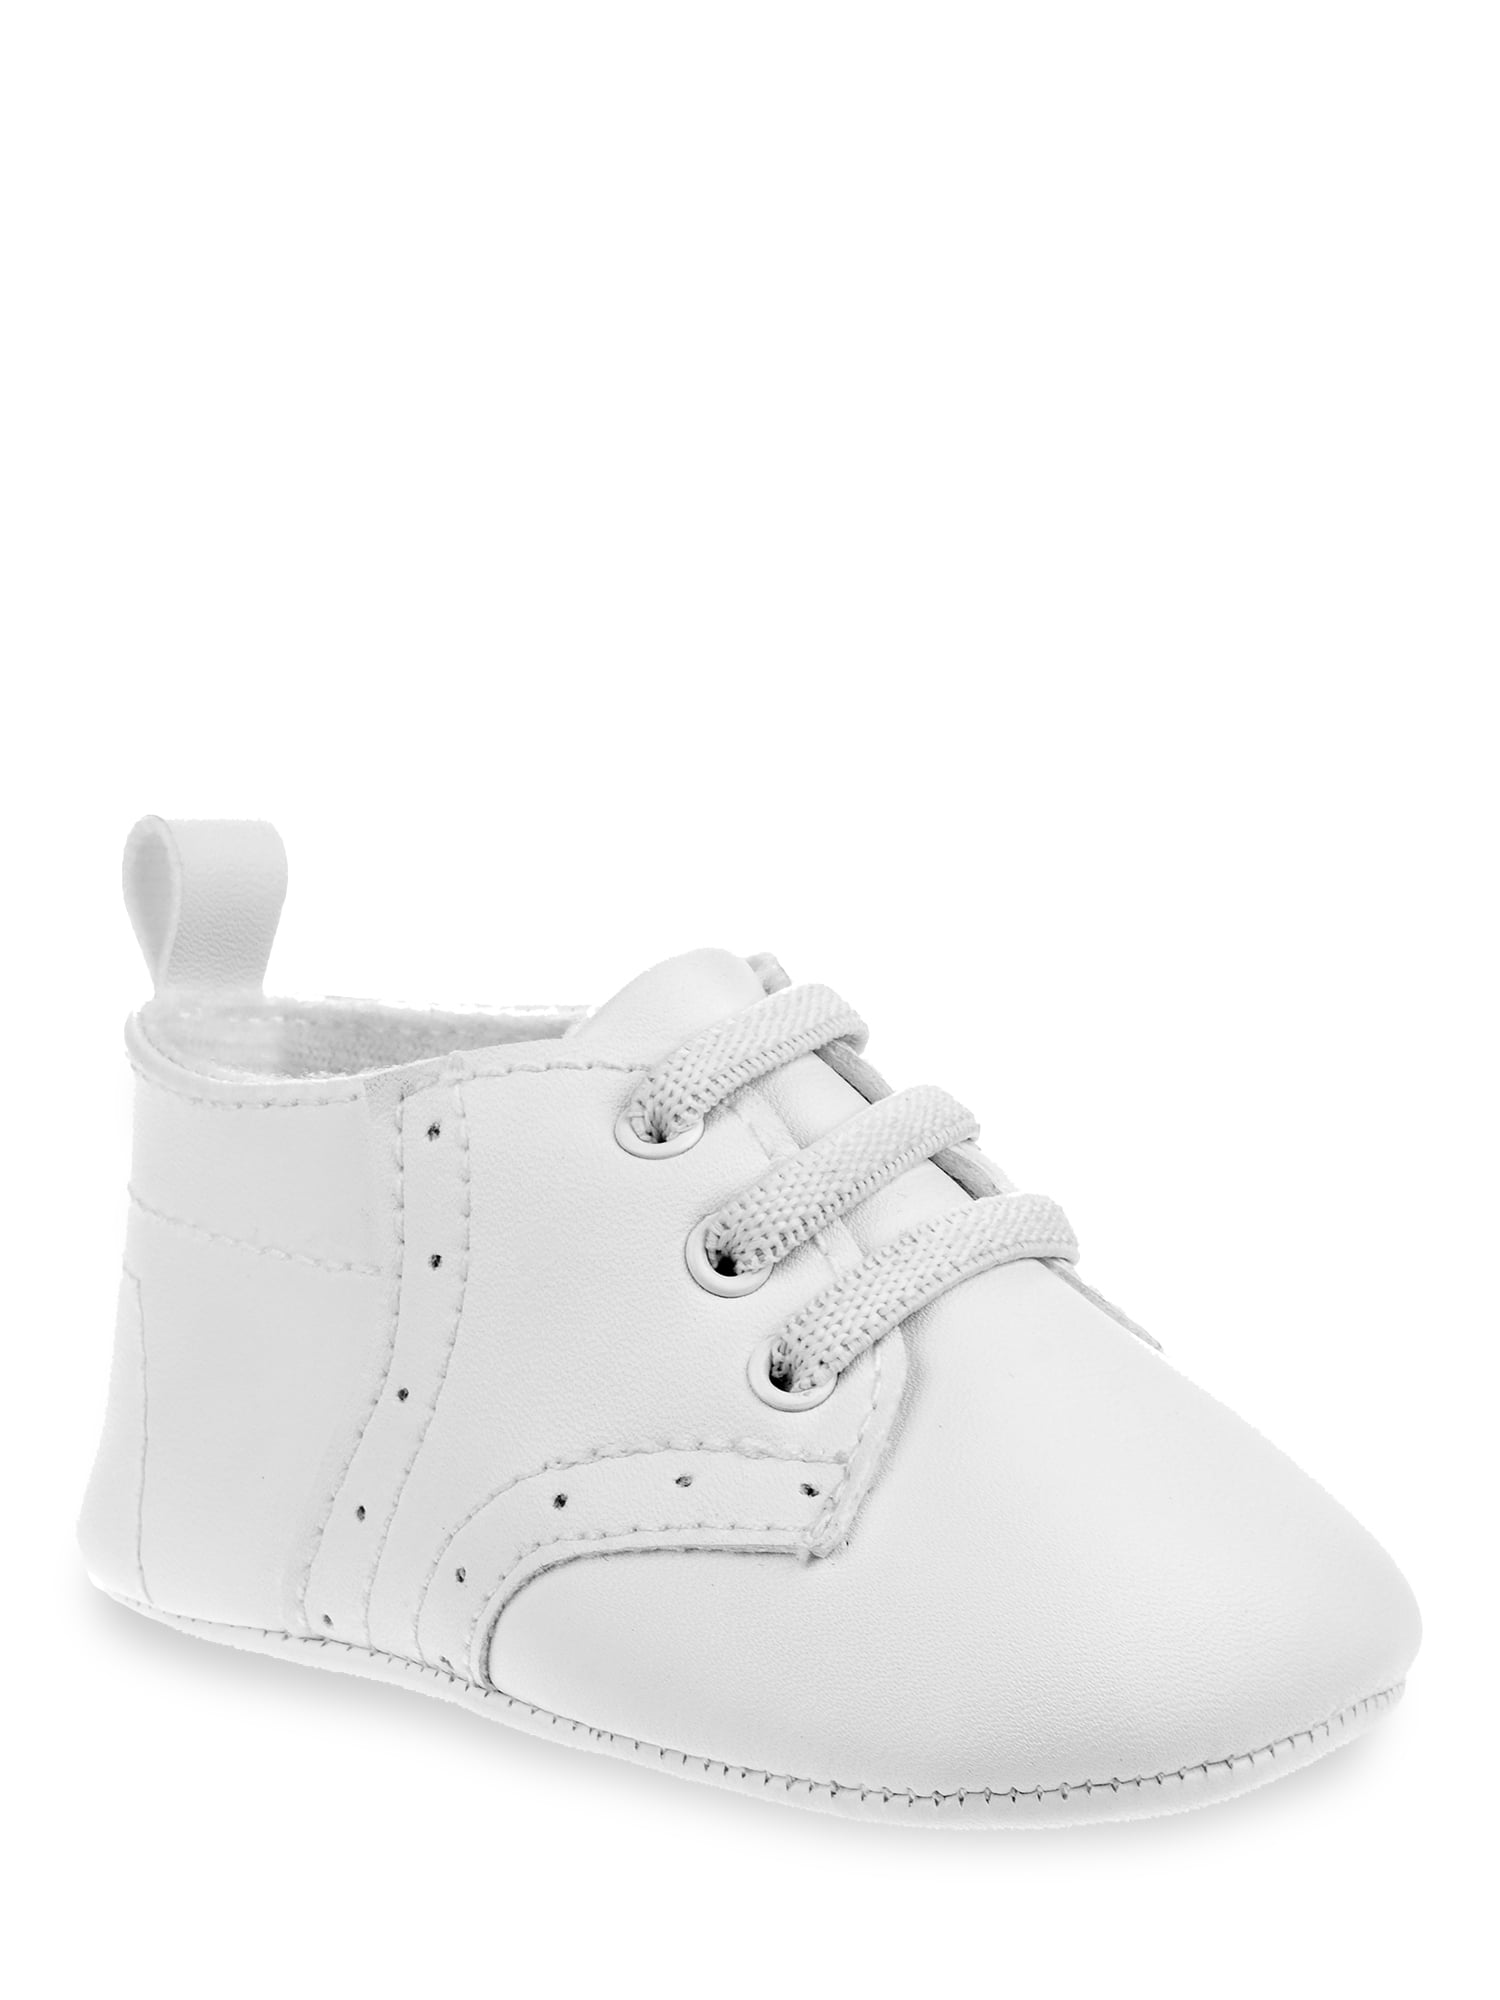 infant dress shoes